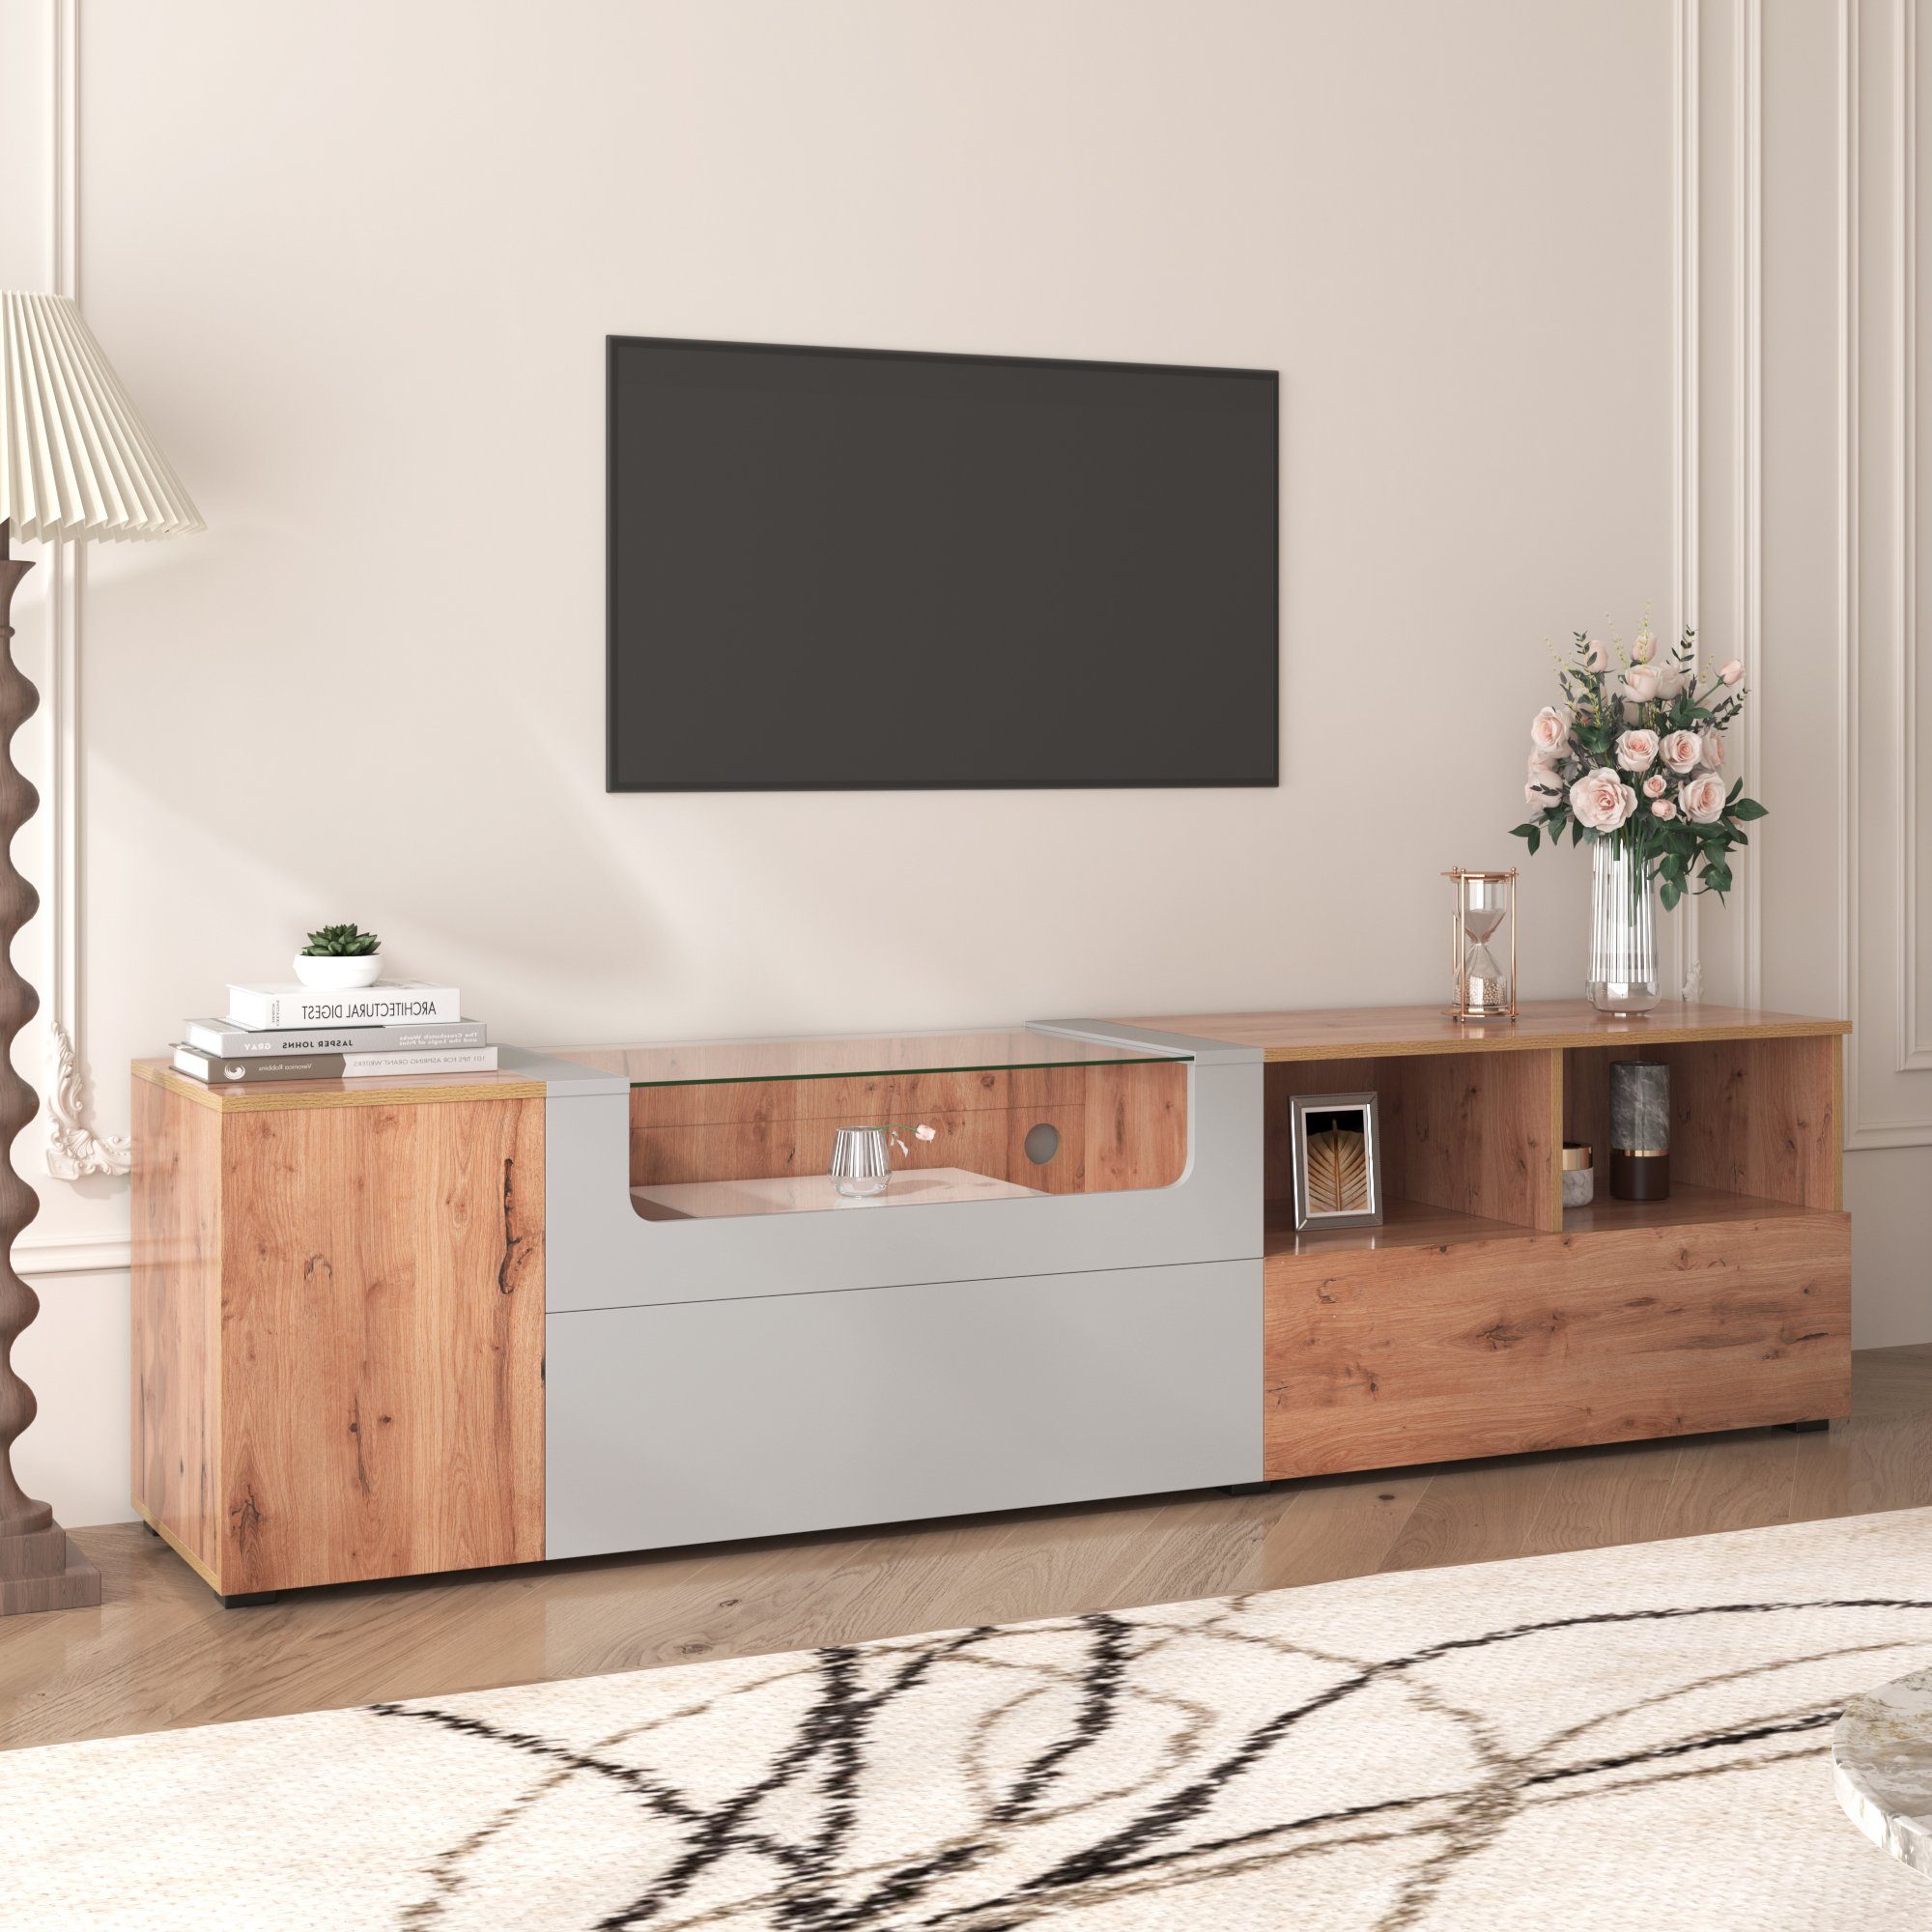 KLAM HOME Lowboard moderner klassischer TV-Schrank Eicheholzfarbe (für Wohnzimmer Schlafzimmer), TV-Board Fernsehschrank Kommode für Fernseher 190 x 40 x 48 holz/hellgrau